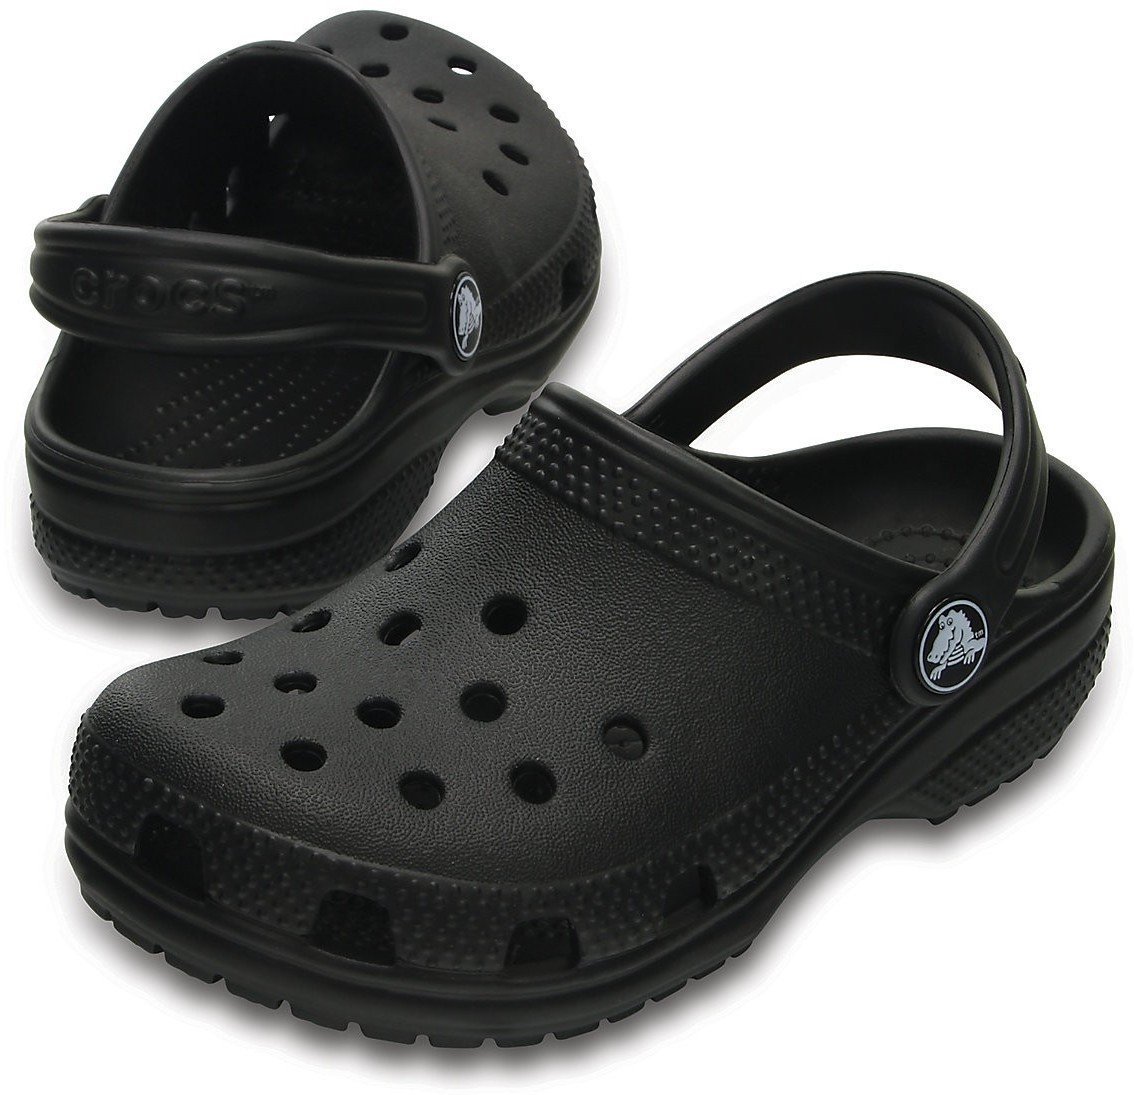 Dječje cipele za jedrenje Crocs Kids' Classic Clog Black 24-25